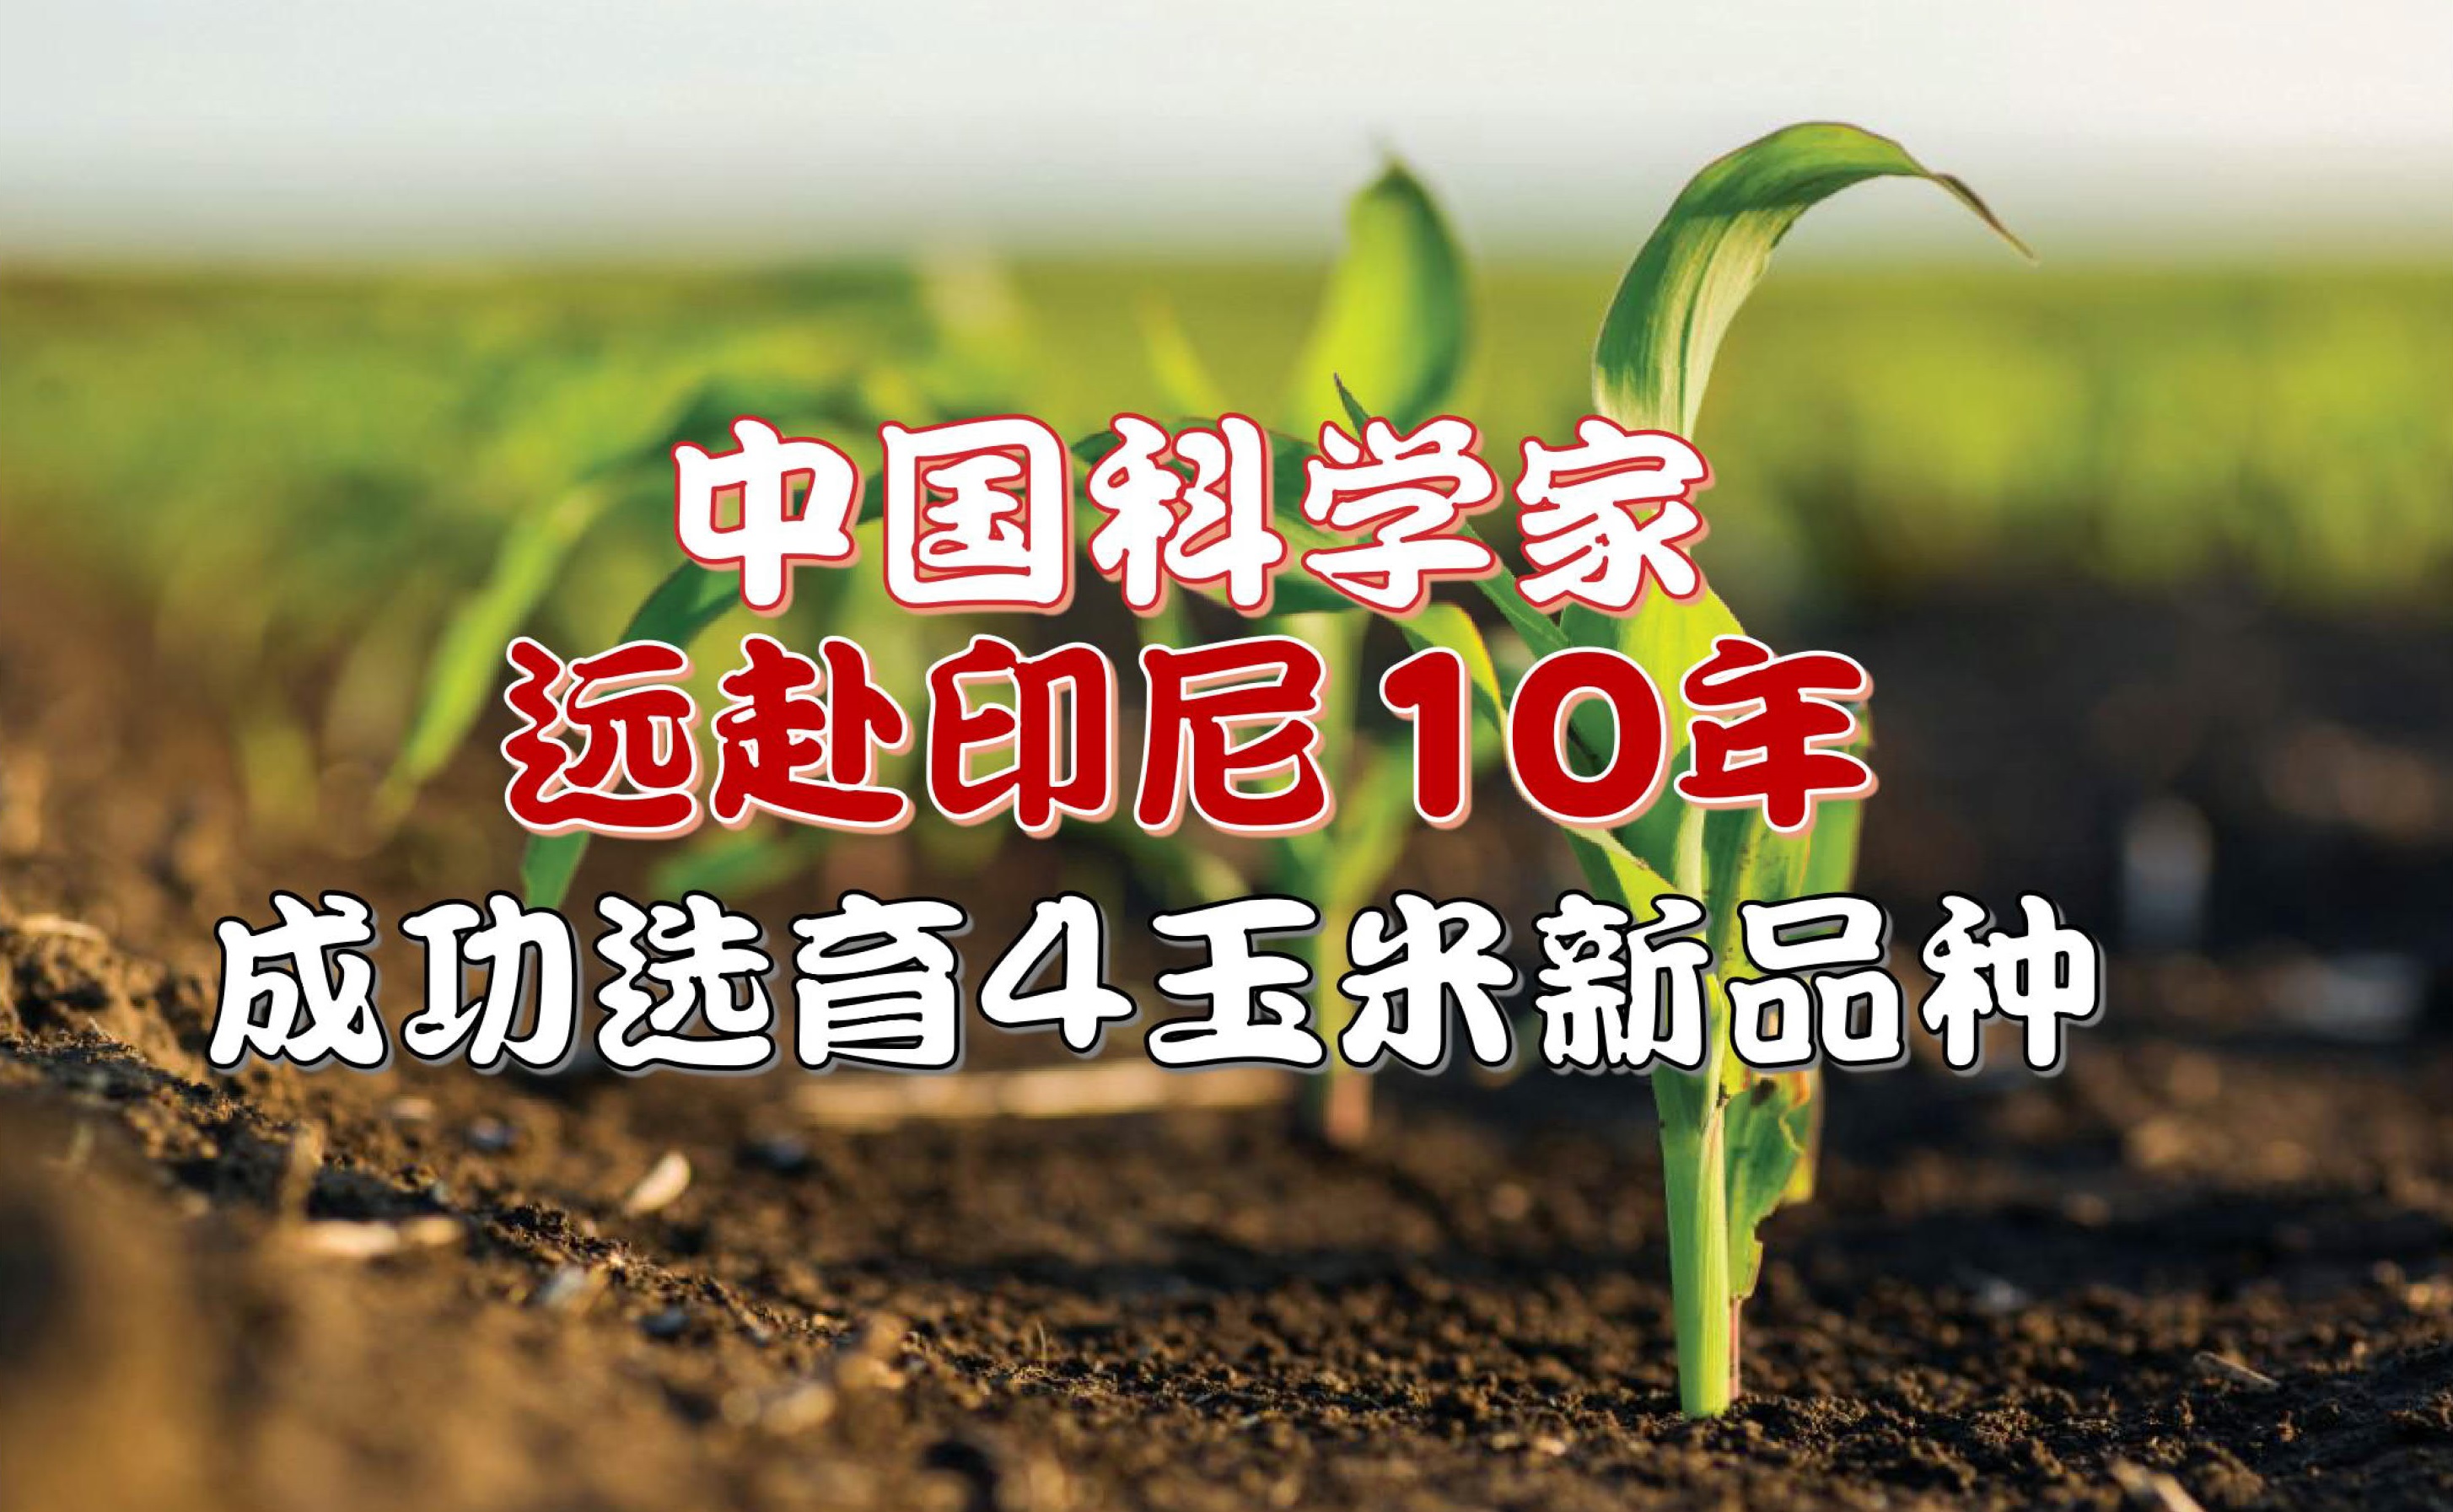 中国科学家远赴印尼10年 成功选育4玉米新品种 - 农牧世界